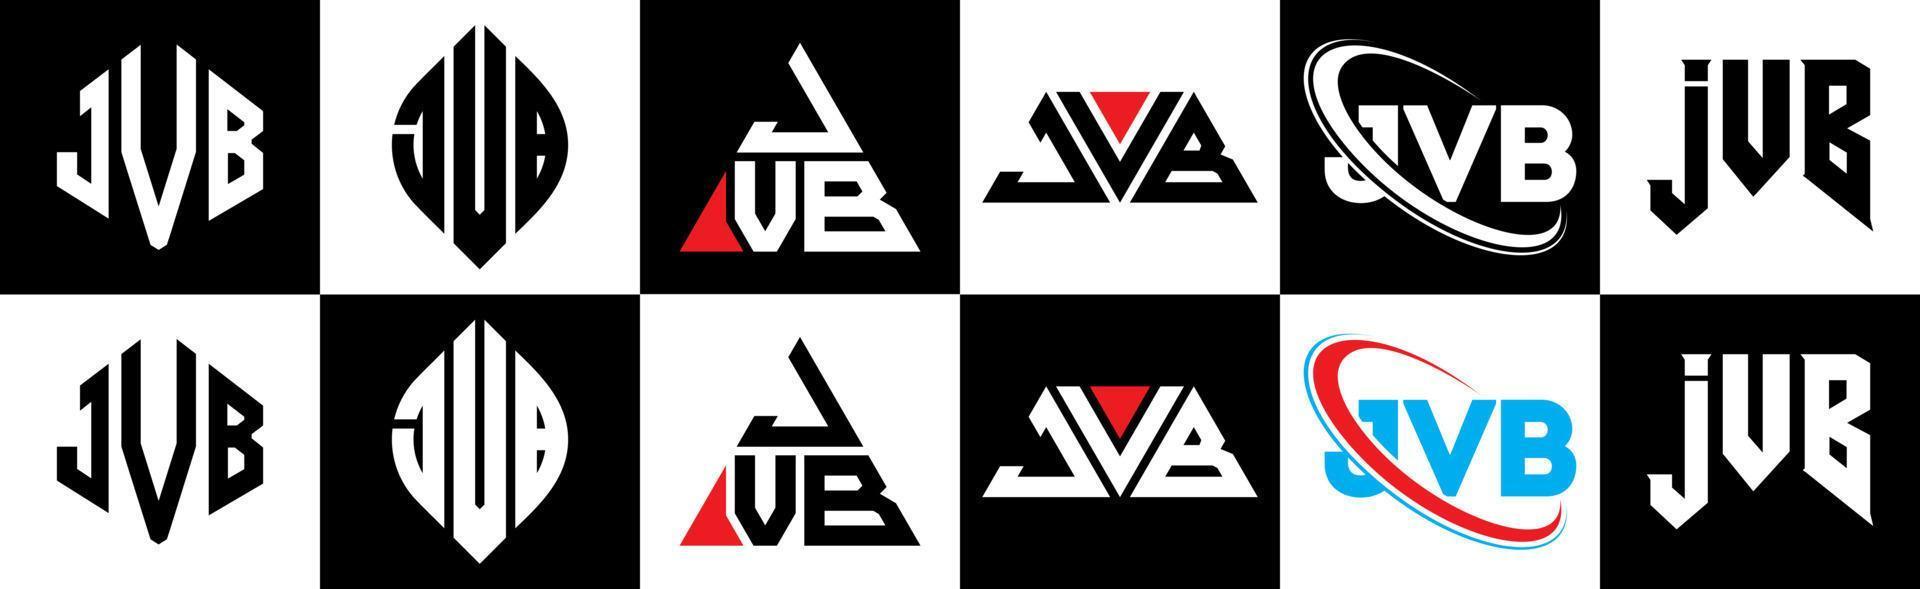 Diseño de logotipo de letra jvb en seis estilos. jvb polígono, círculo, triángulo, hexágono, estilo plano y simple con logotipo de letra de variación de color blanco y negro en una mesa de trabajo. logotipo minimalista y clásico de jvb vector